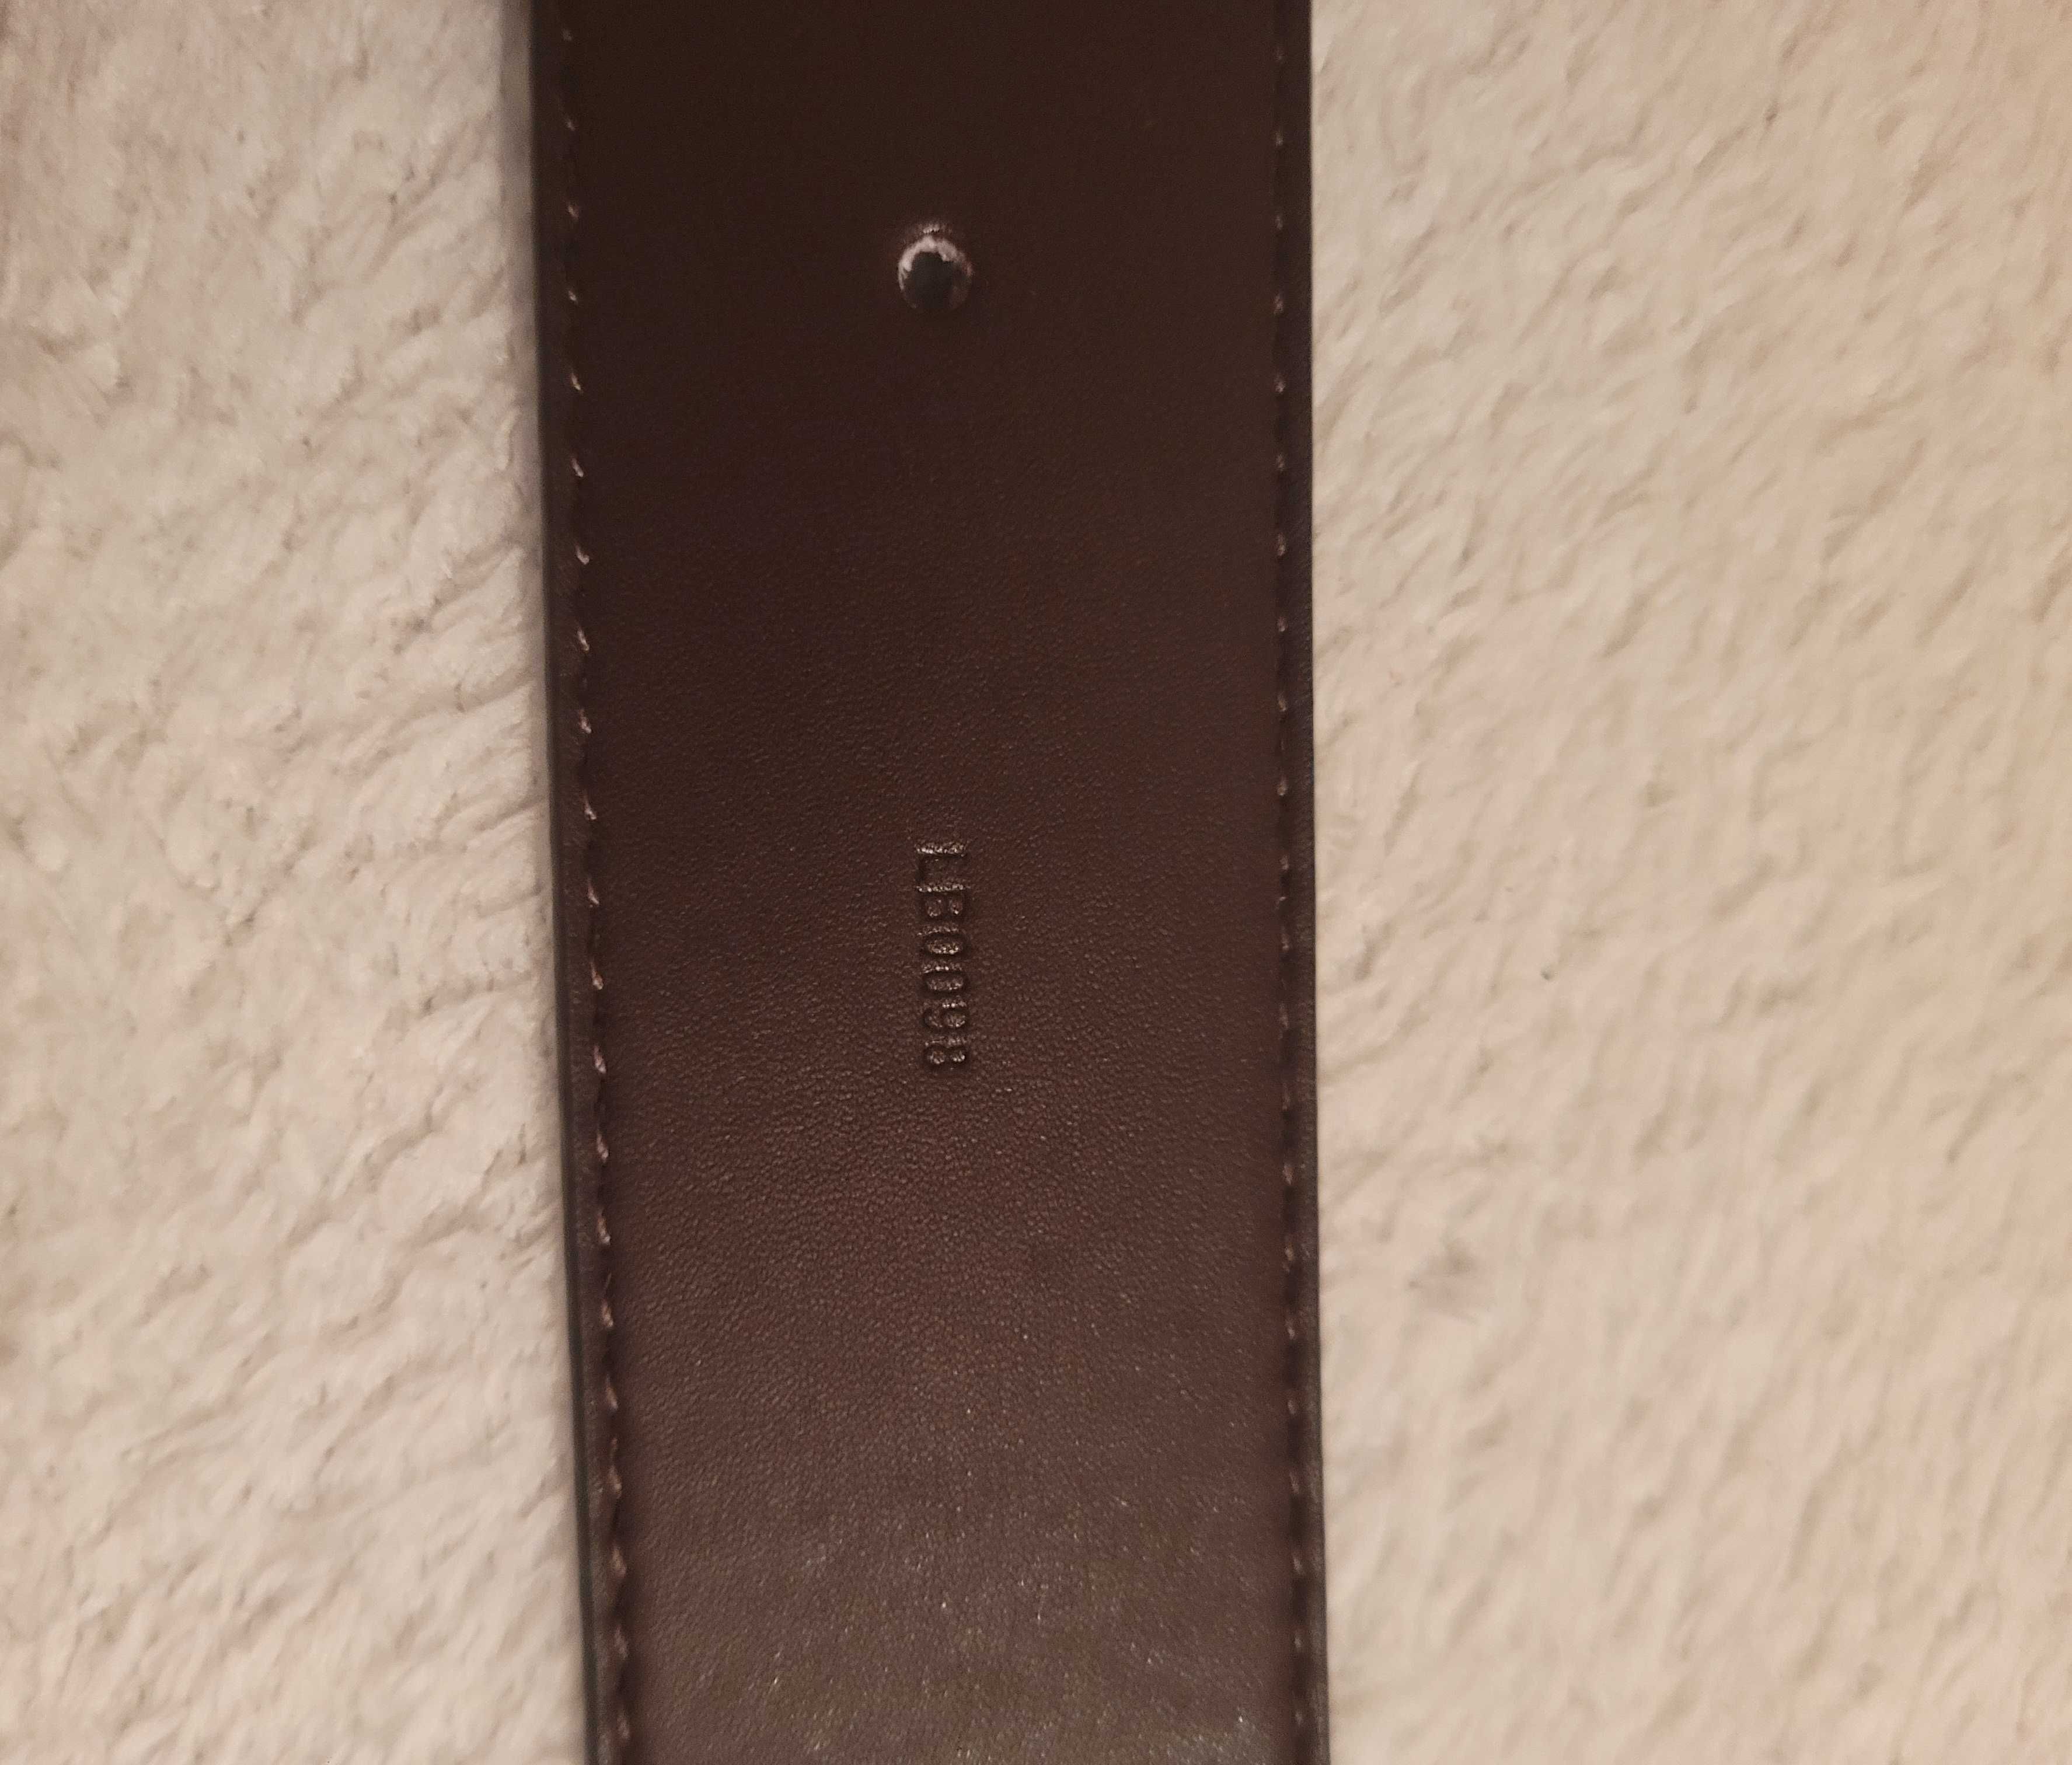 Louis Vuitton Pasek LV Belt (size:100)